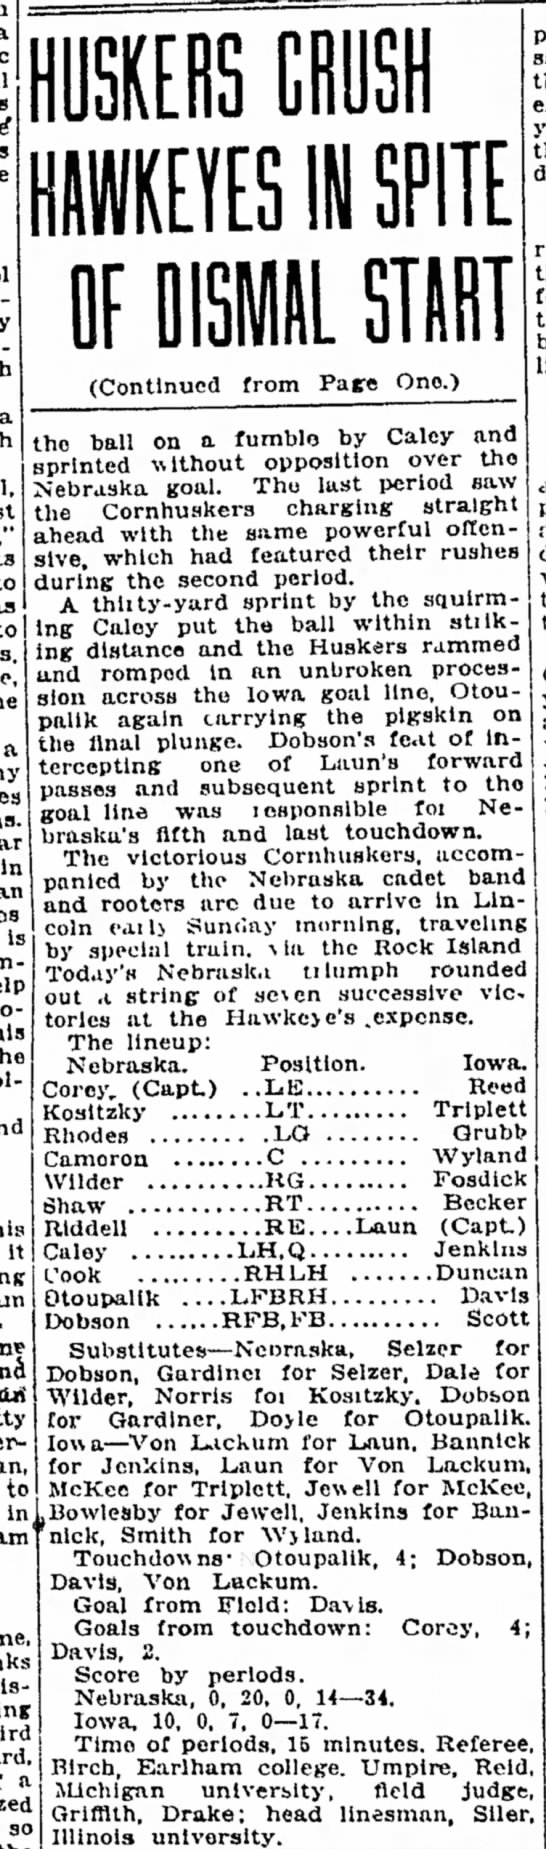 1916 Nebraska-Iowa football part 2 - 